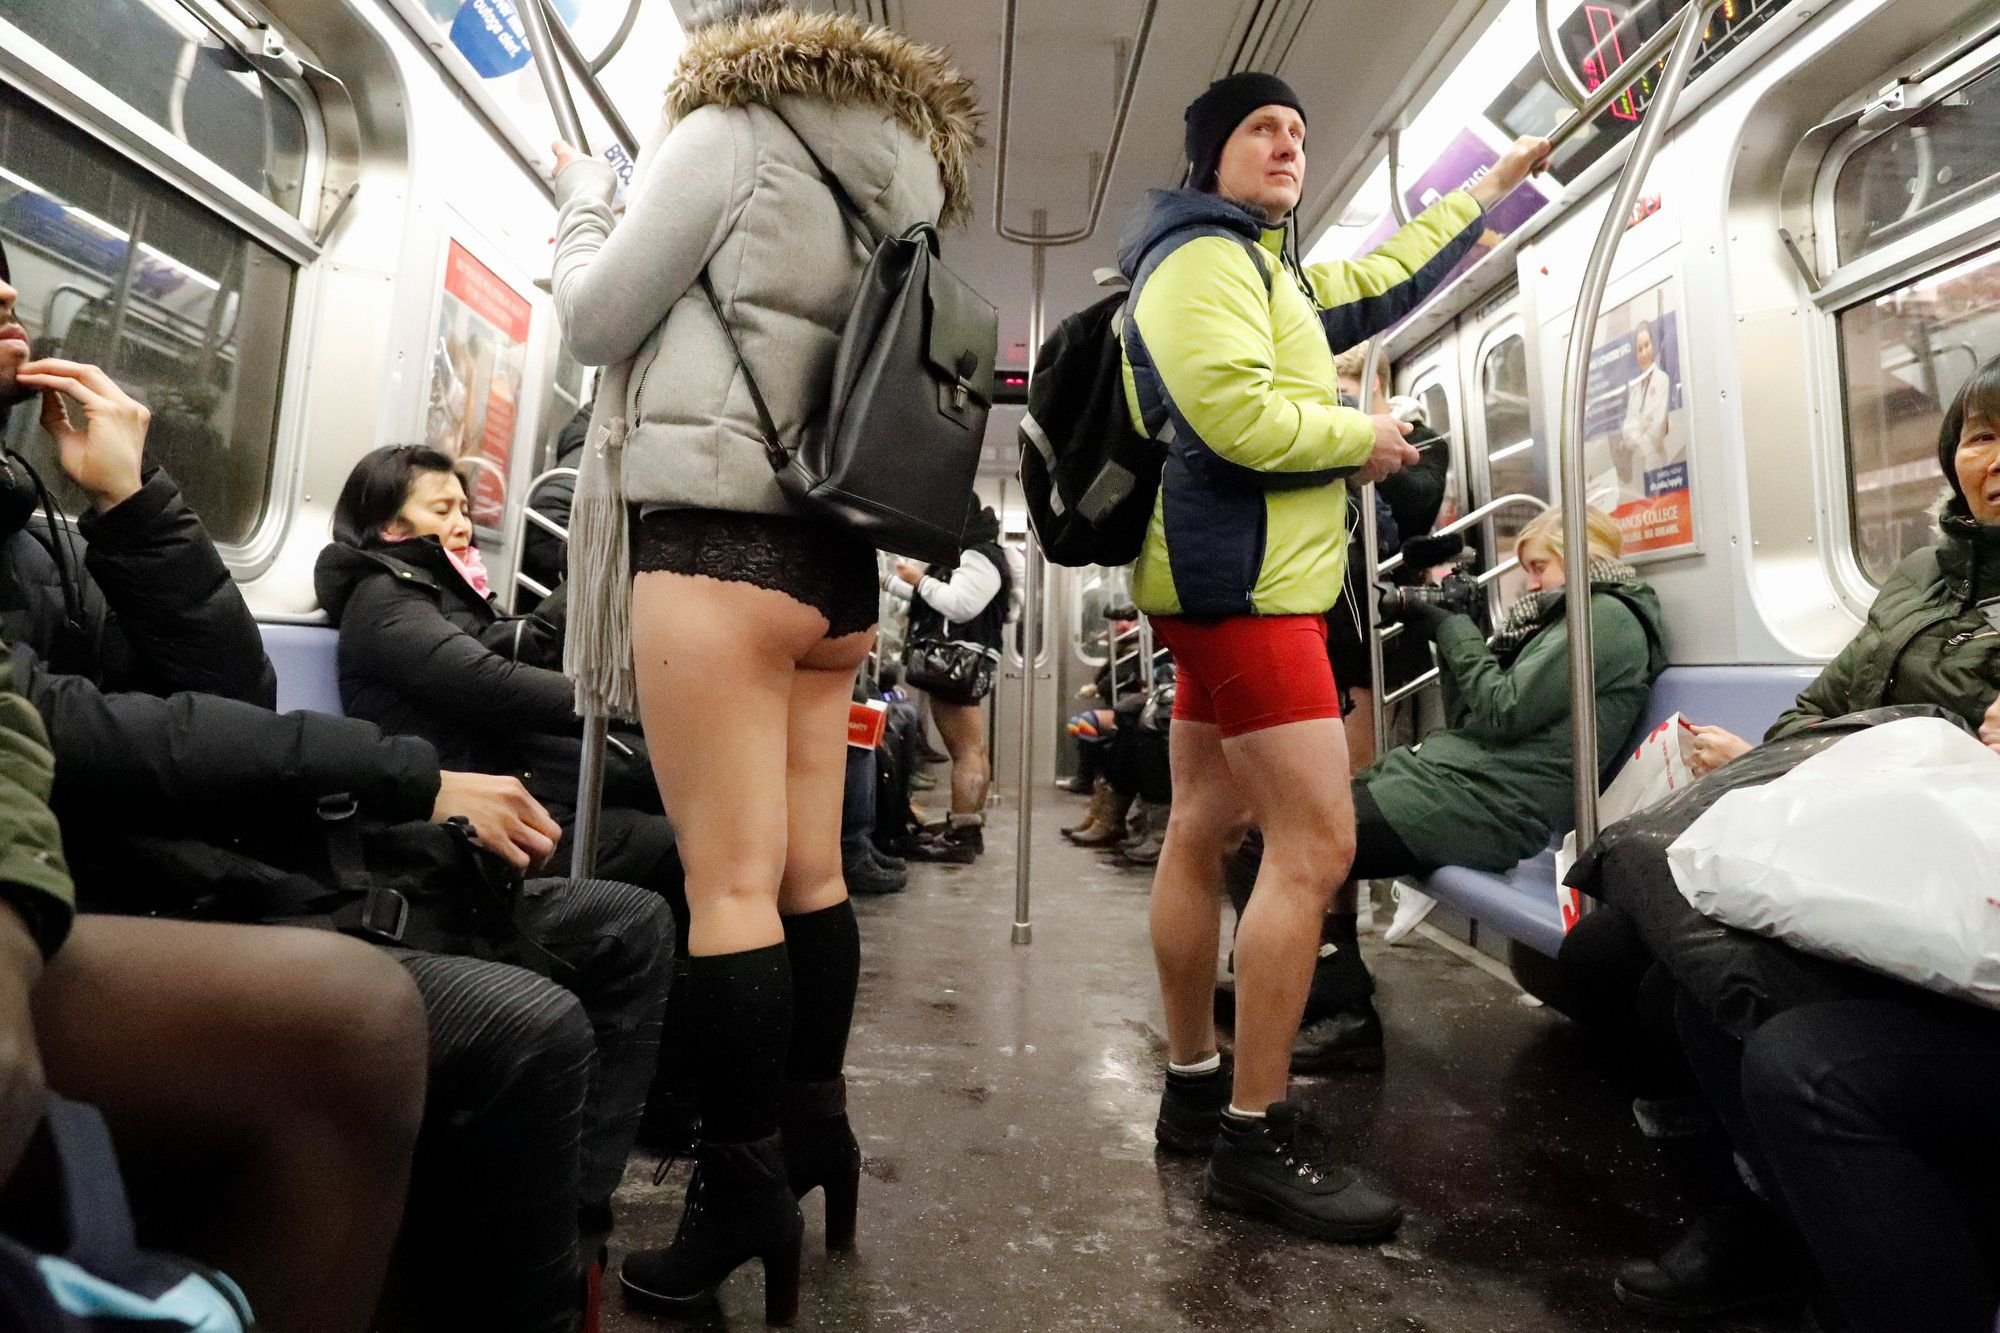 No Pants Subway Ride Москва